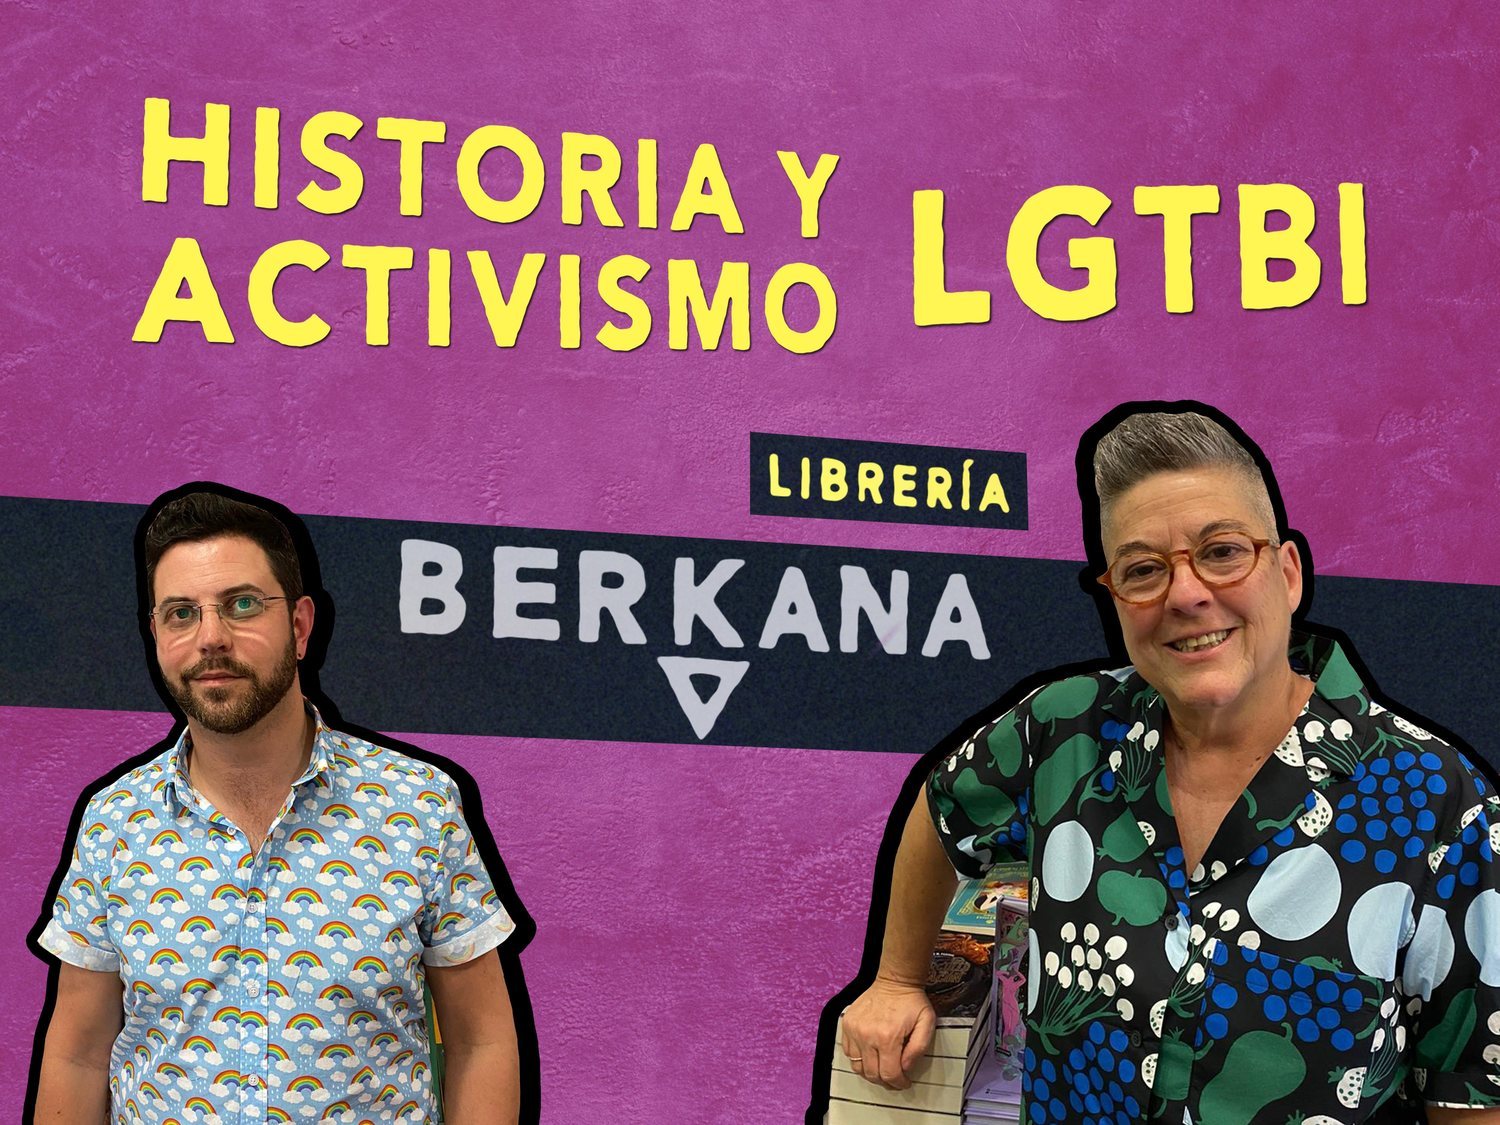 Librería Berkana: historia, cultura y activismo LGTBI en España